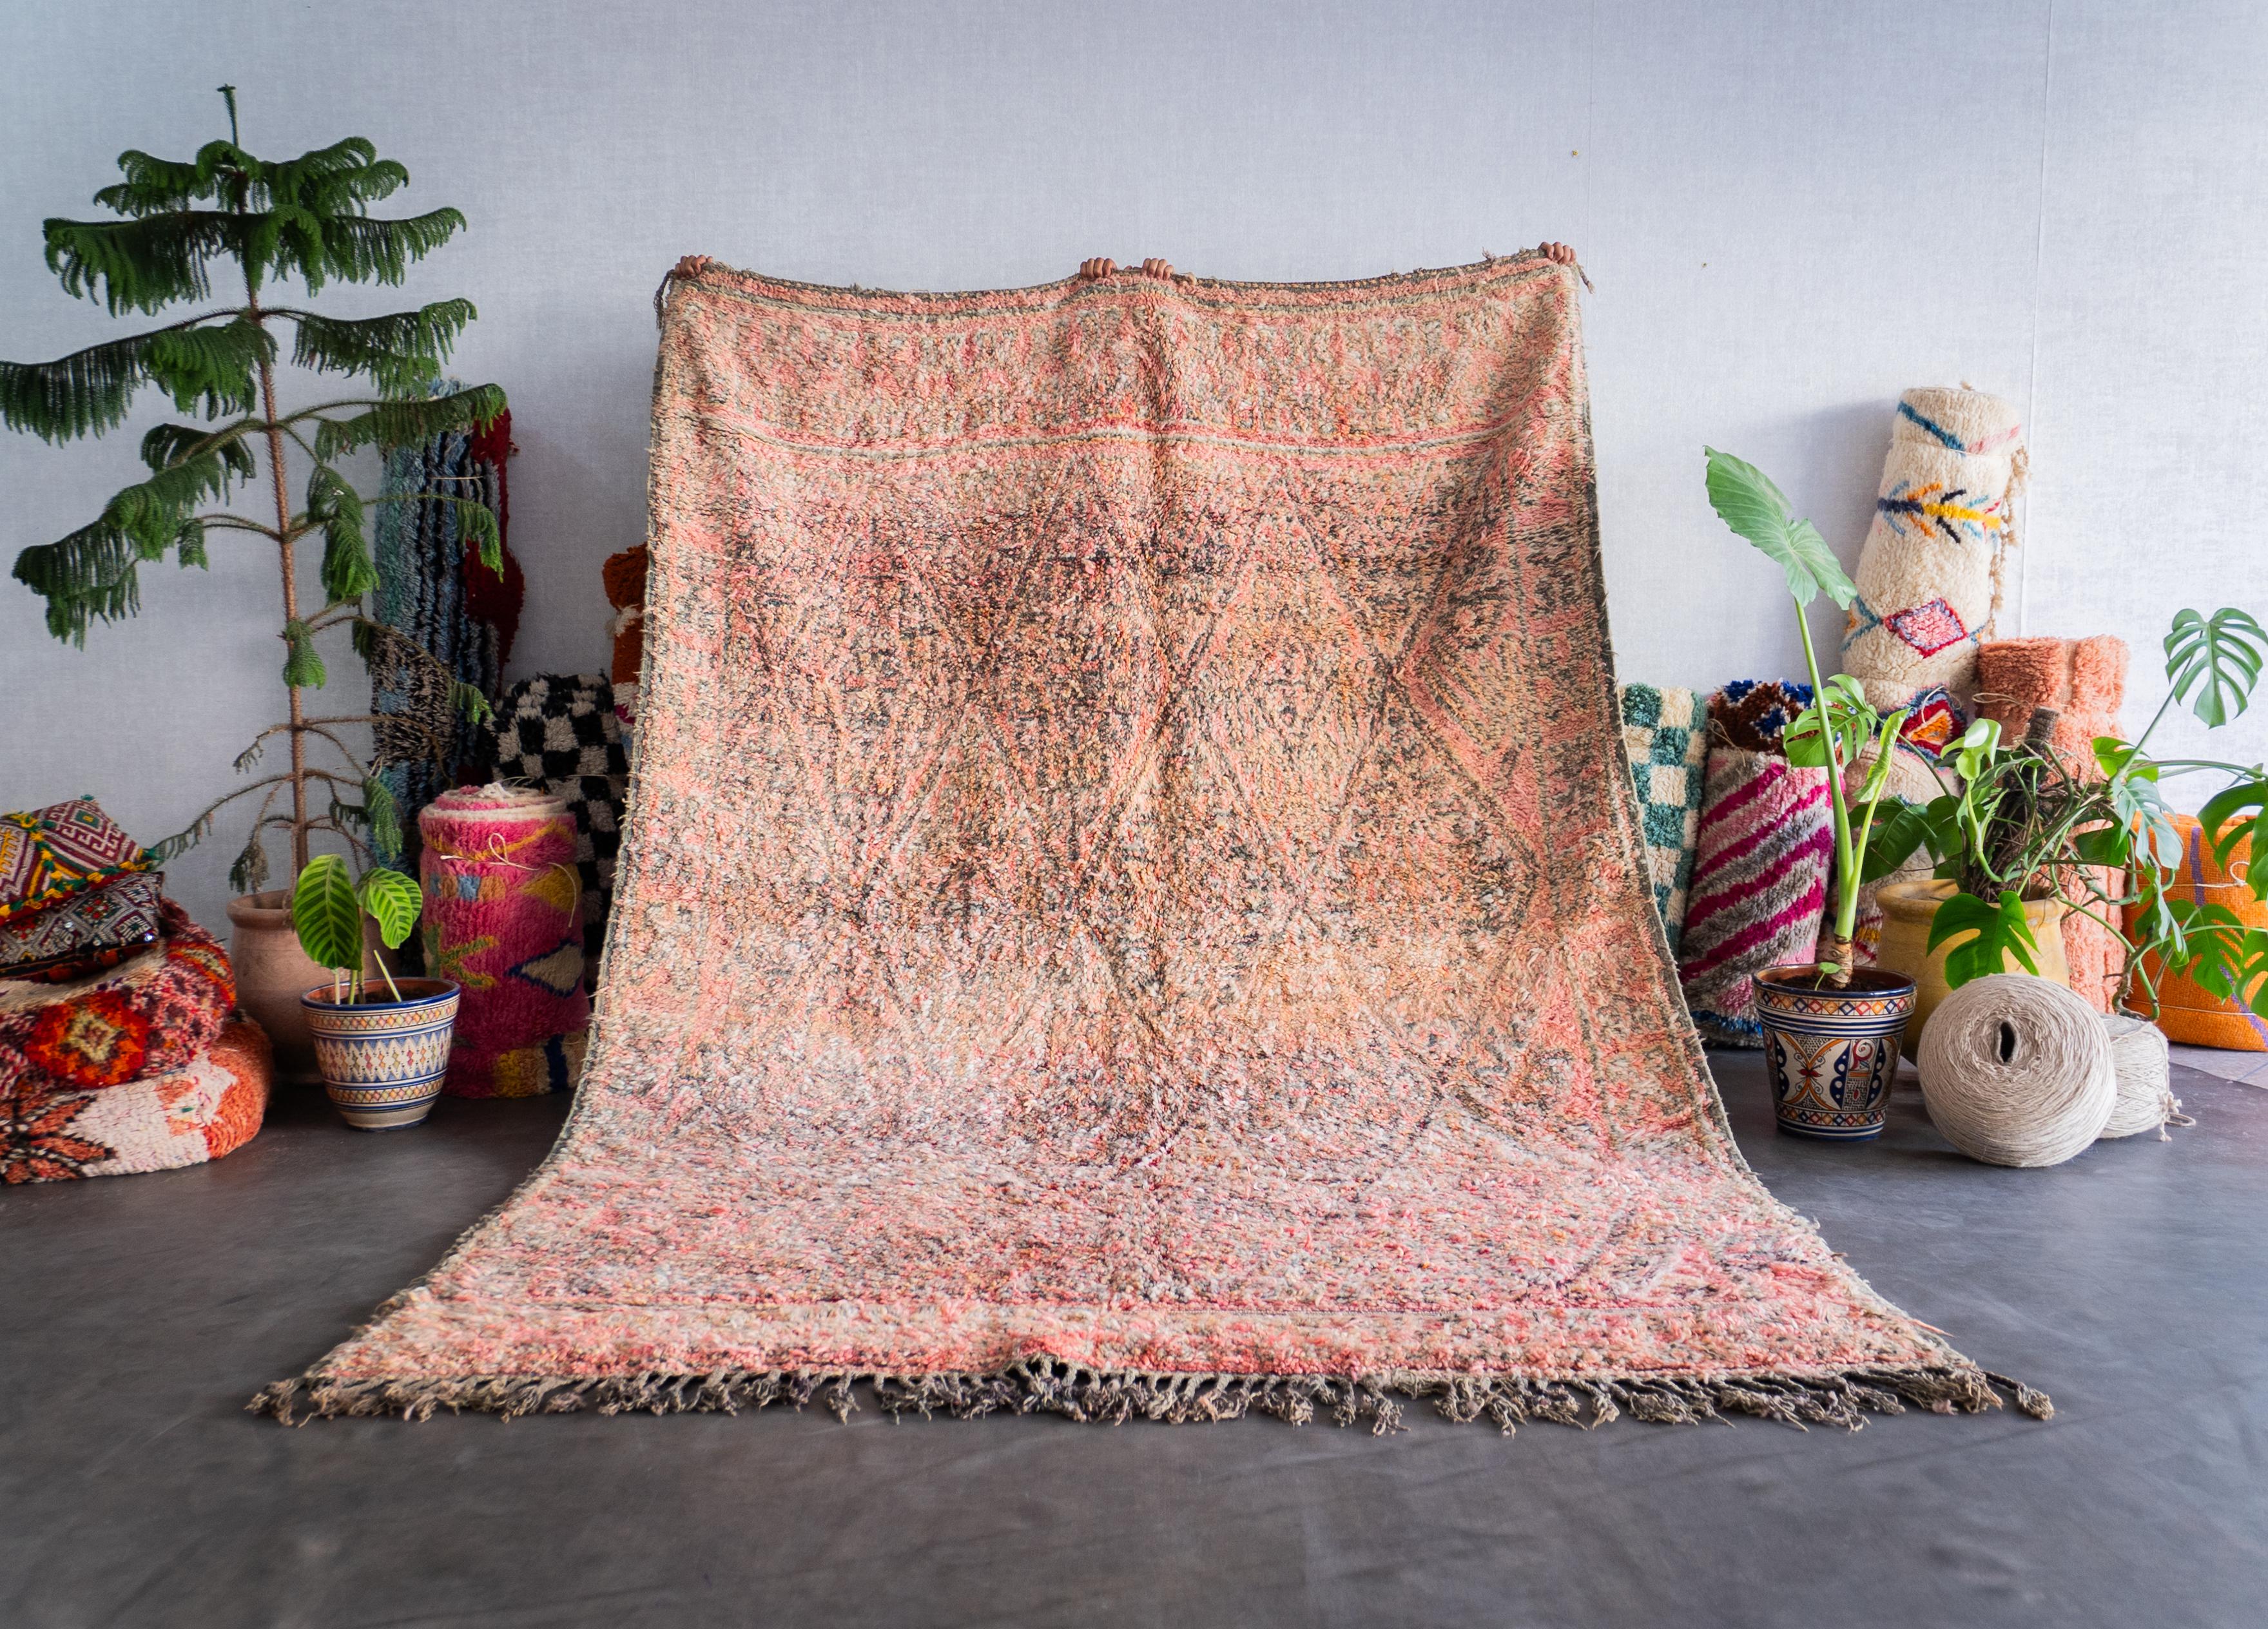 Découvrez le riche héritage tissé dans notre tapis marocain vintage. Fabriqué à la main par des artisans qualifiés selon des techniques éprouvées, chaque tapis berbère est un récit unique qui fait écho à la tapisserie culturelle du Maroc. Avec ses